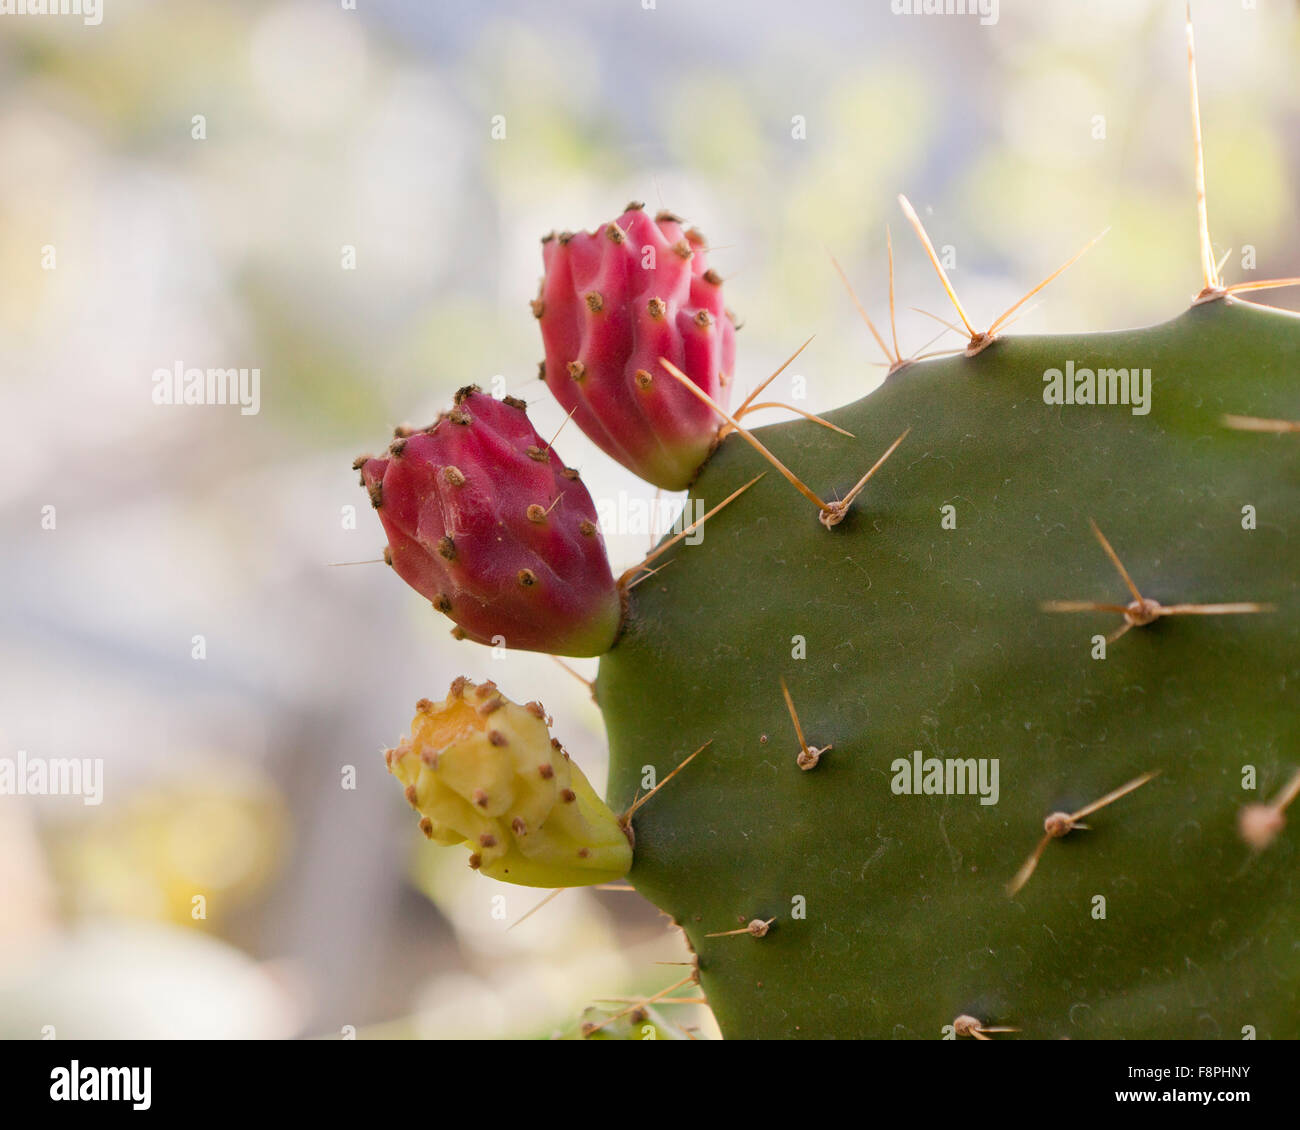 Texas nopal (Opuntia engelmannii) fruta nativa del suroeste de Estados Unidos y México Foto de stock